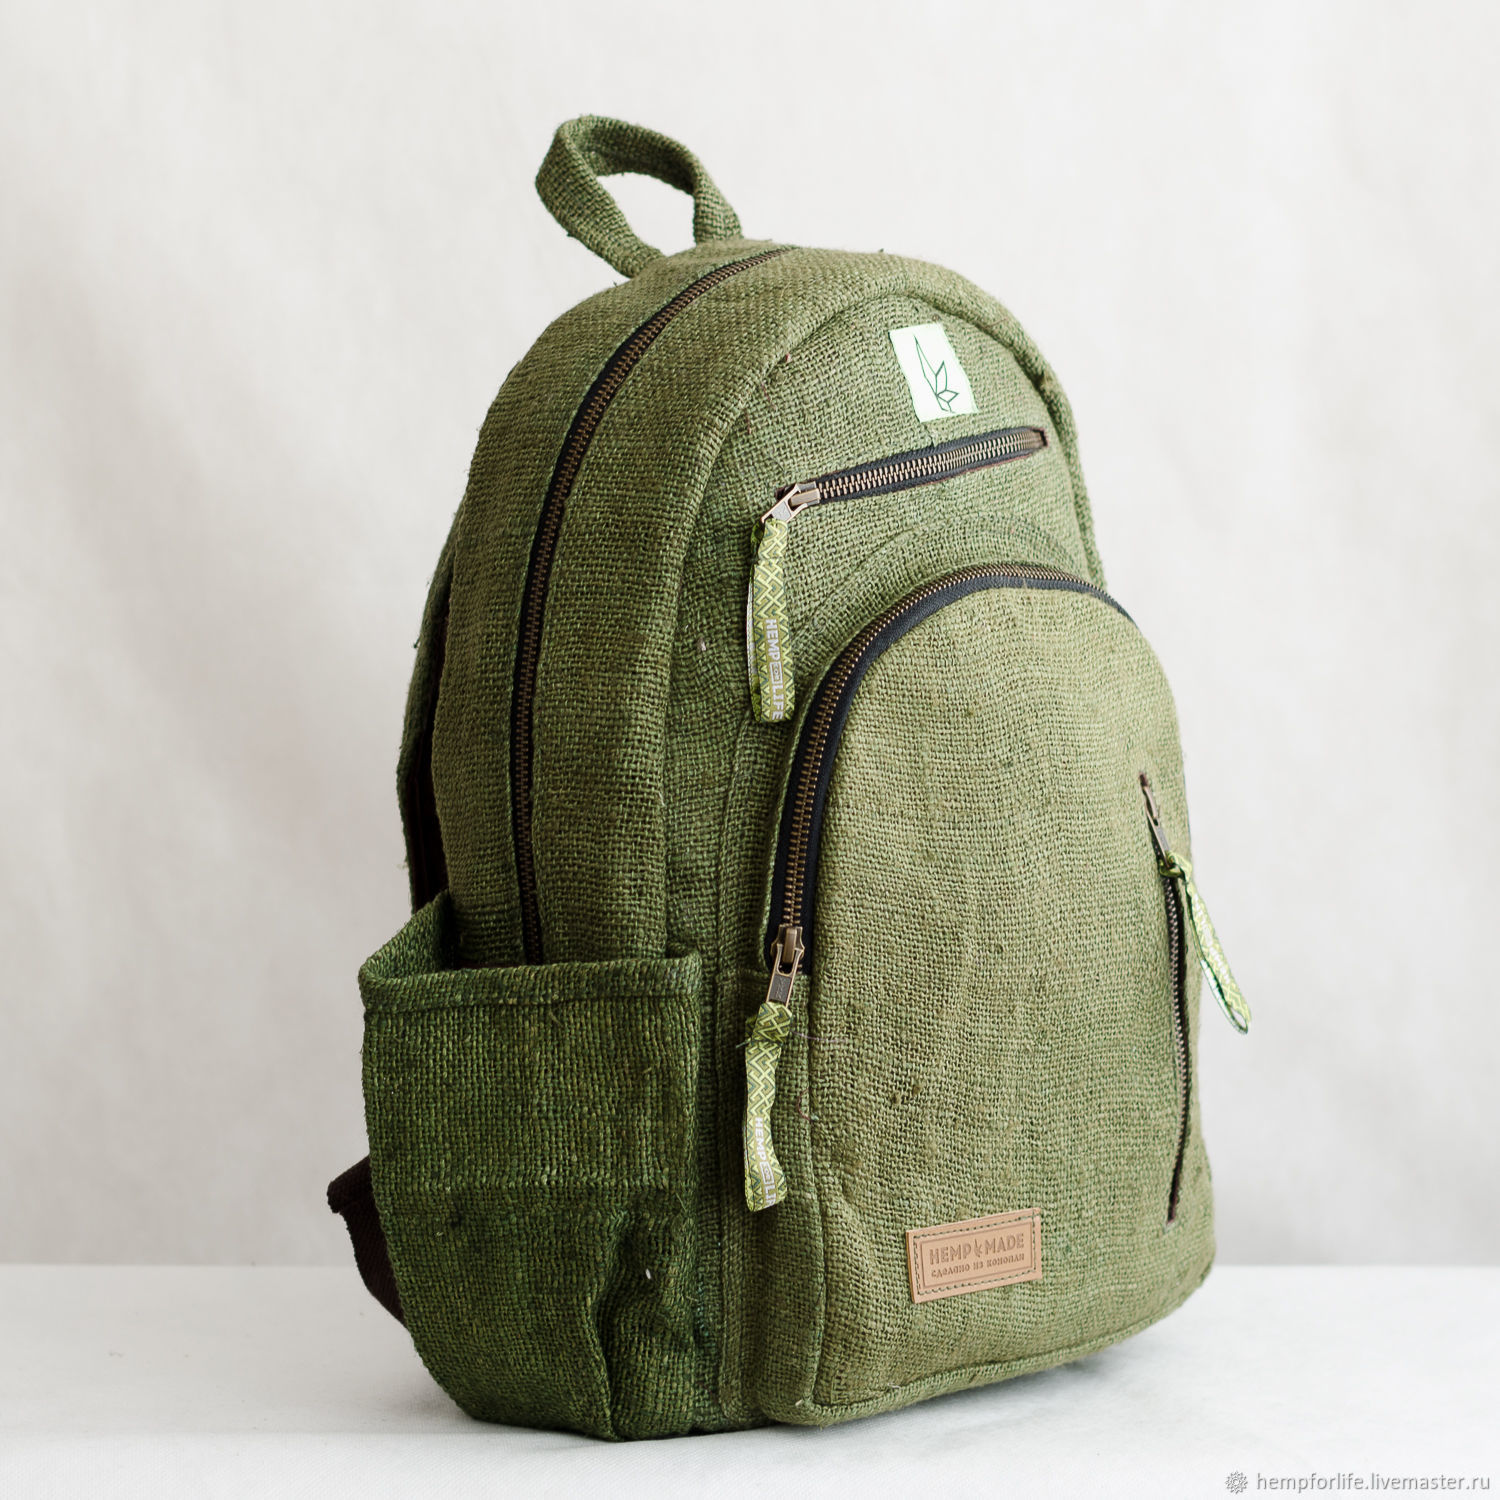 Купить рюкзак в нижнем новгороде. Рюкзак Хемп. Рюкзак torba зеленый. Рюкзак зеленый из конопли. Рюкзак из конопляной ткани.